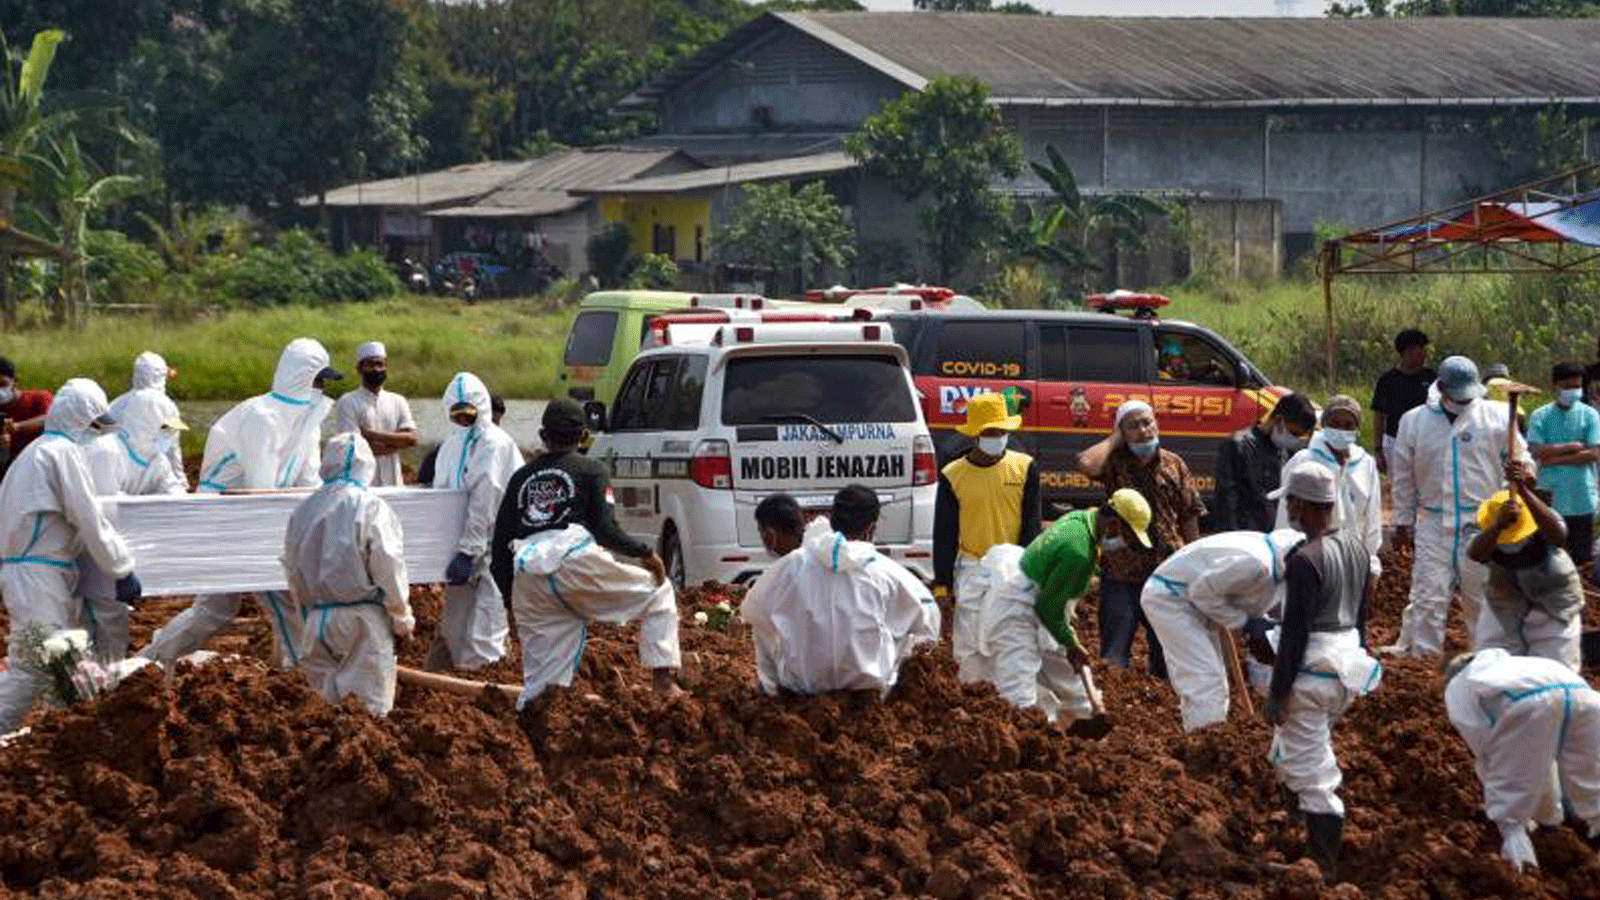 عمال يدفنون جثث ضحايا فيروس كورونا Covid-19 في مقبرة بيدورينان العامة في بيكاسي، جاوة الغربية، يوم الأربعاء 7 تموز/ يوليو 2021